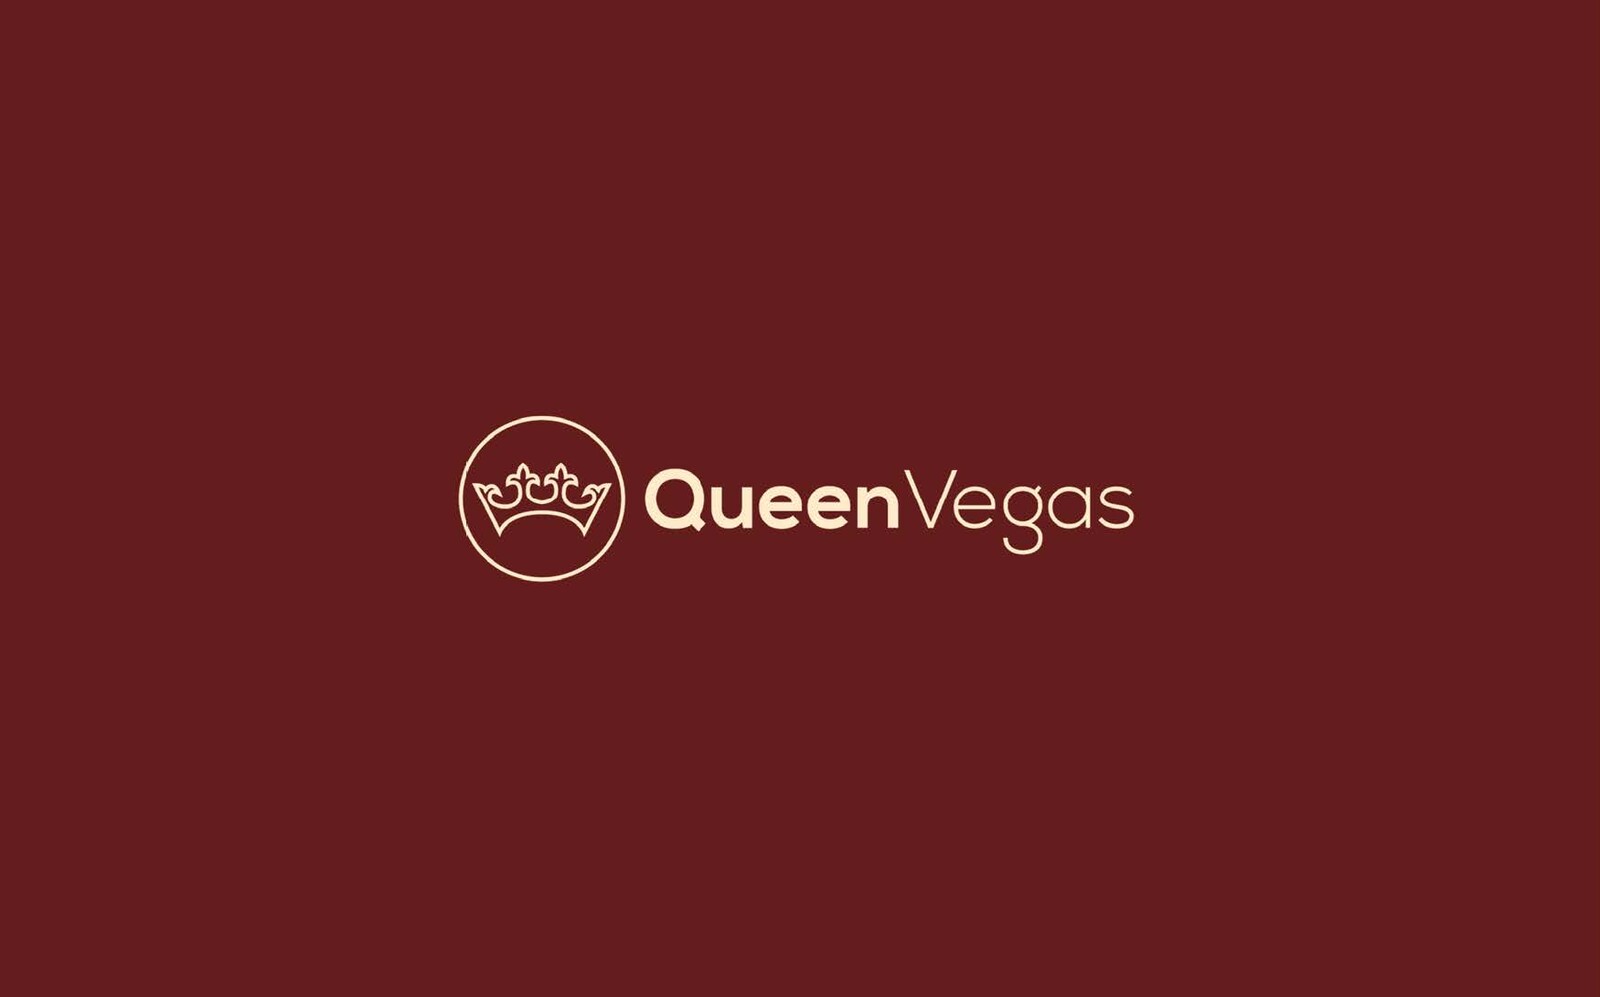 Logo made for Queen Vegas